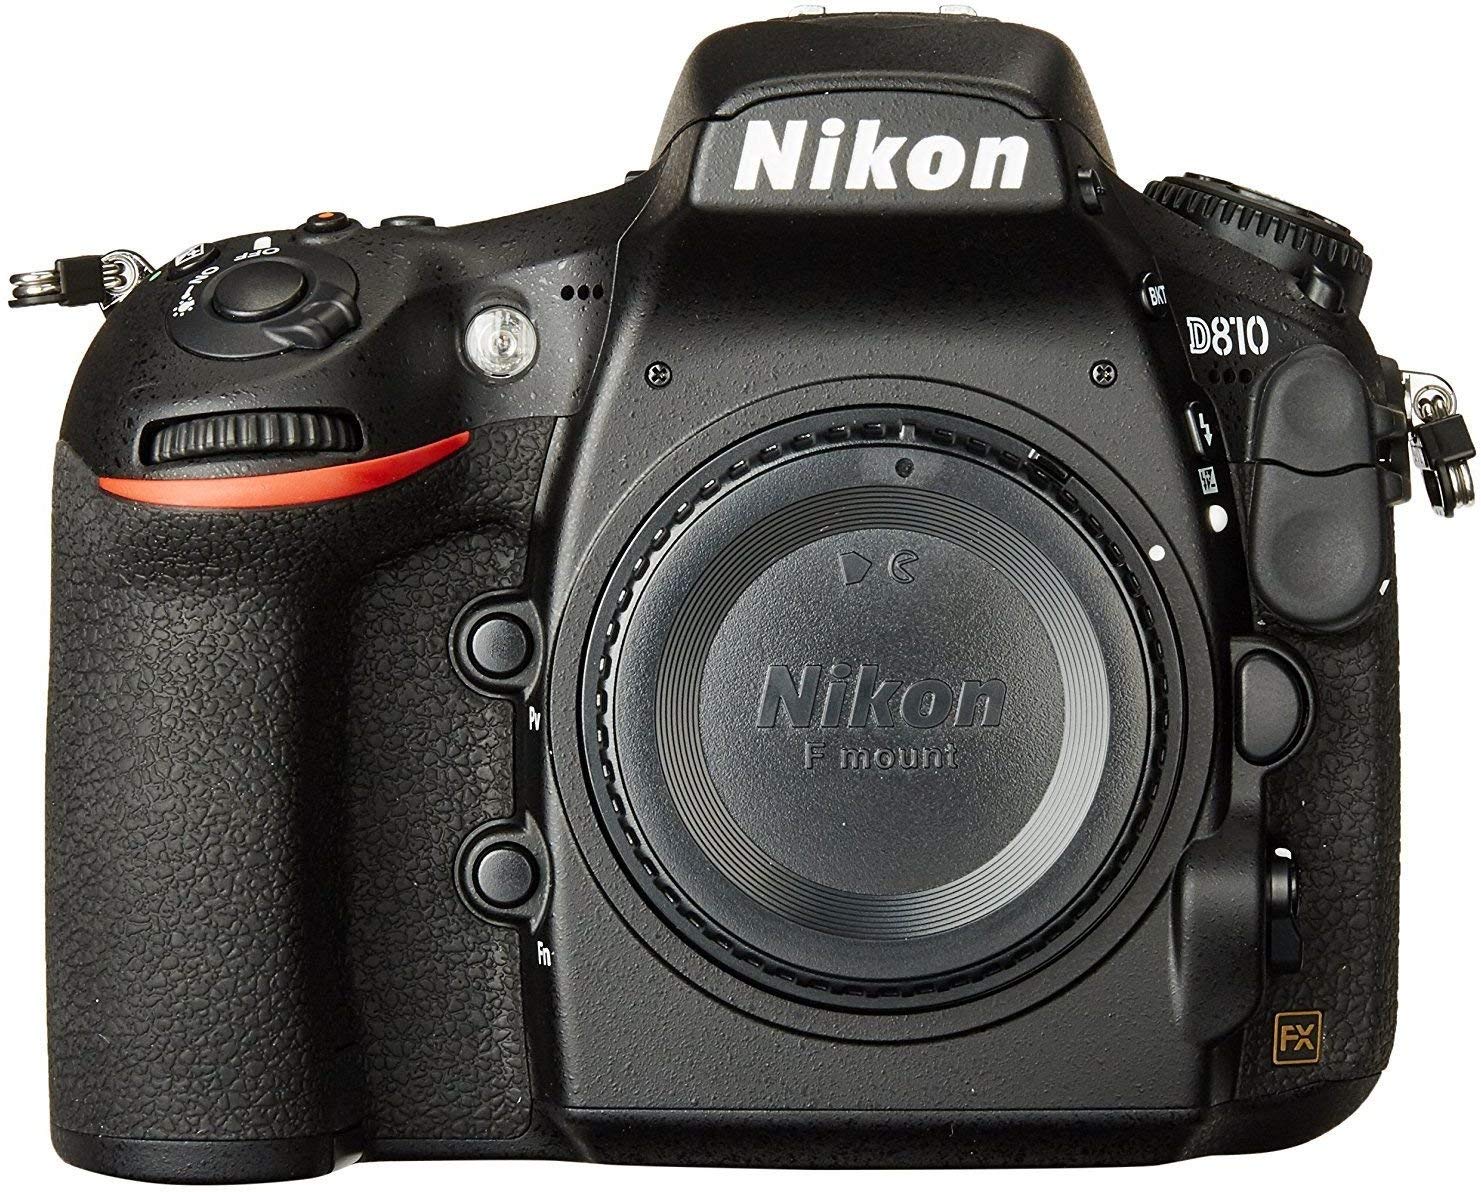 NIKO9 Boîtier d'appareil photo reflex numérique au format FX Nikon D810